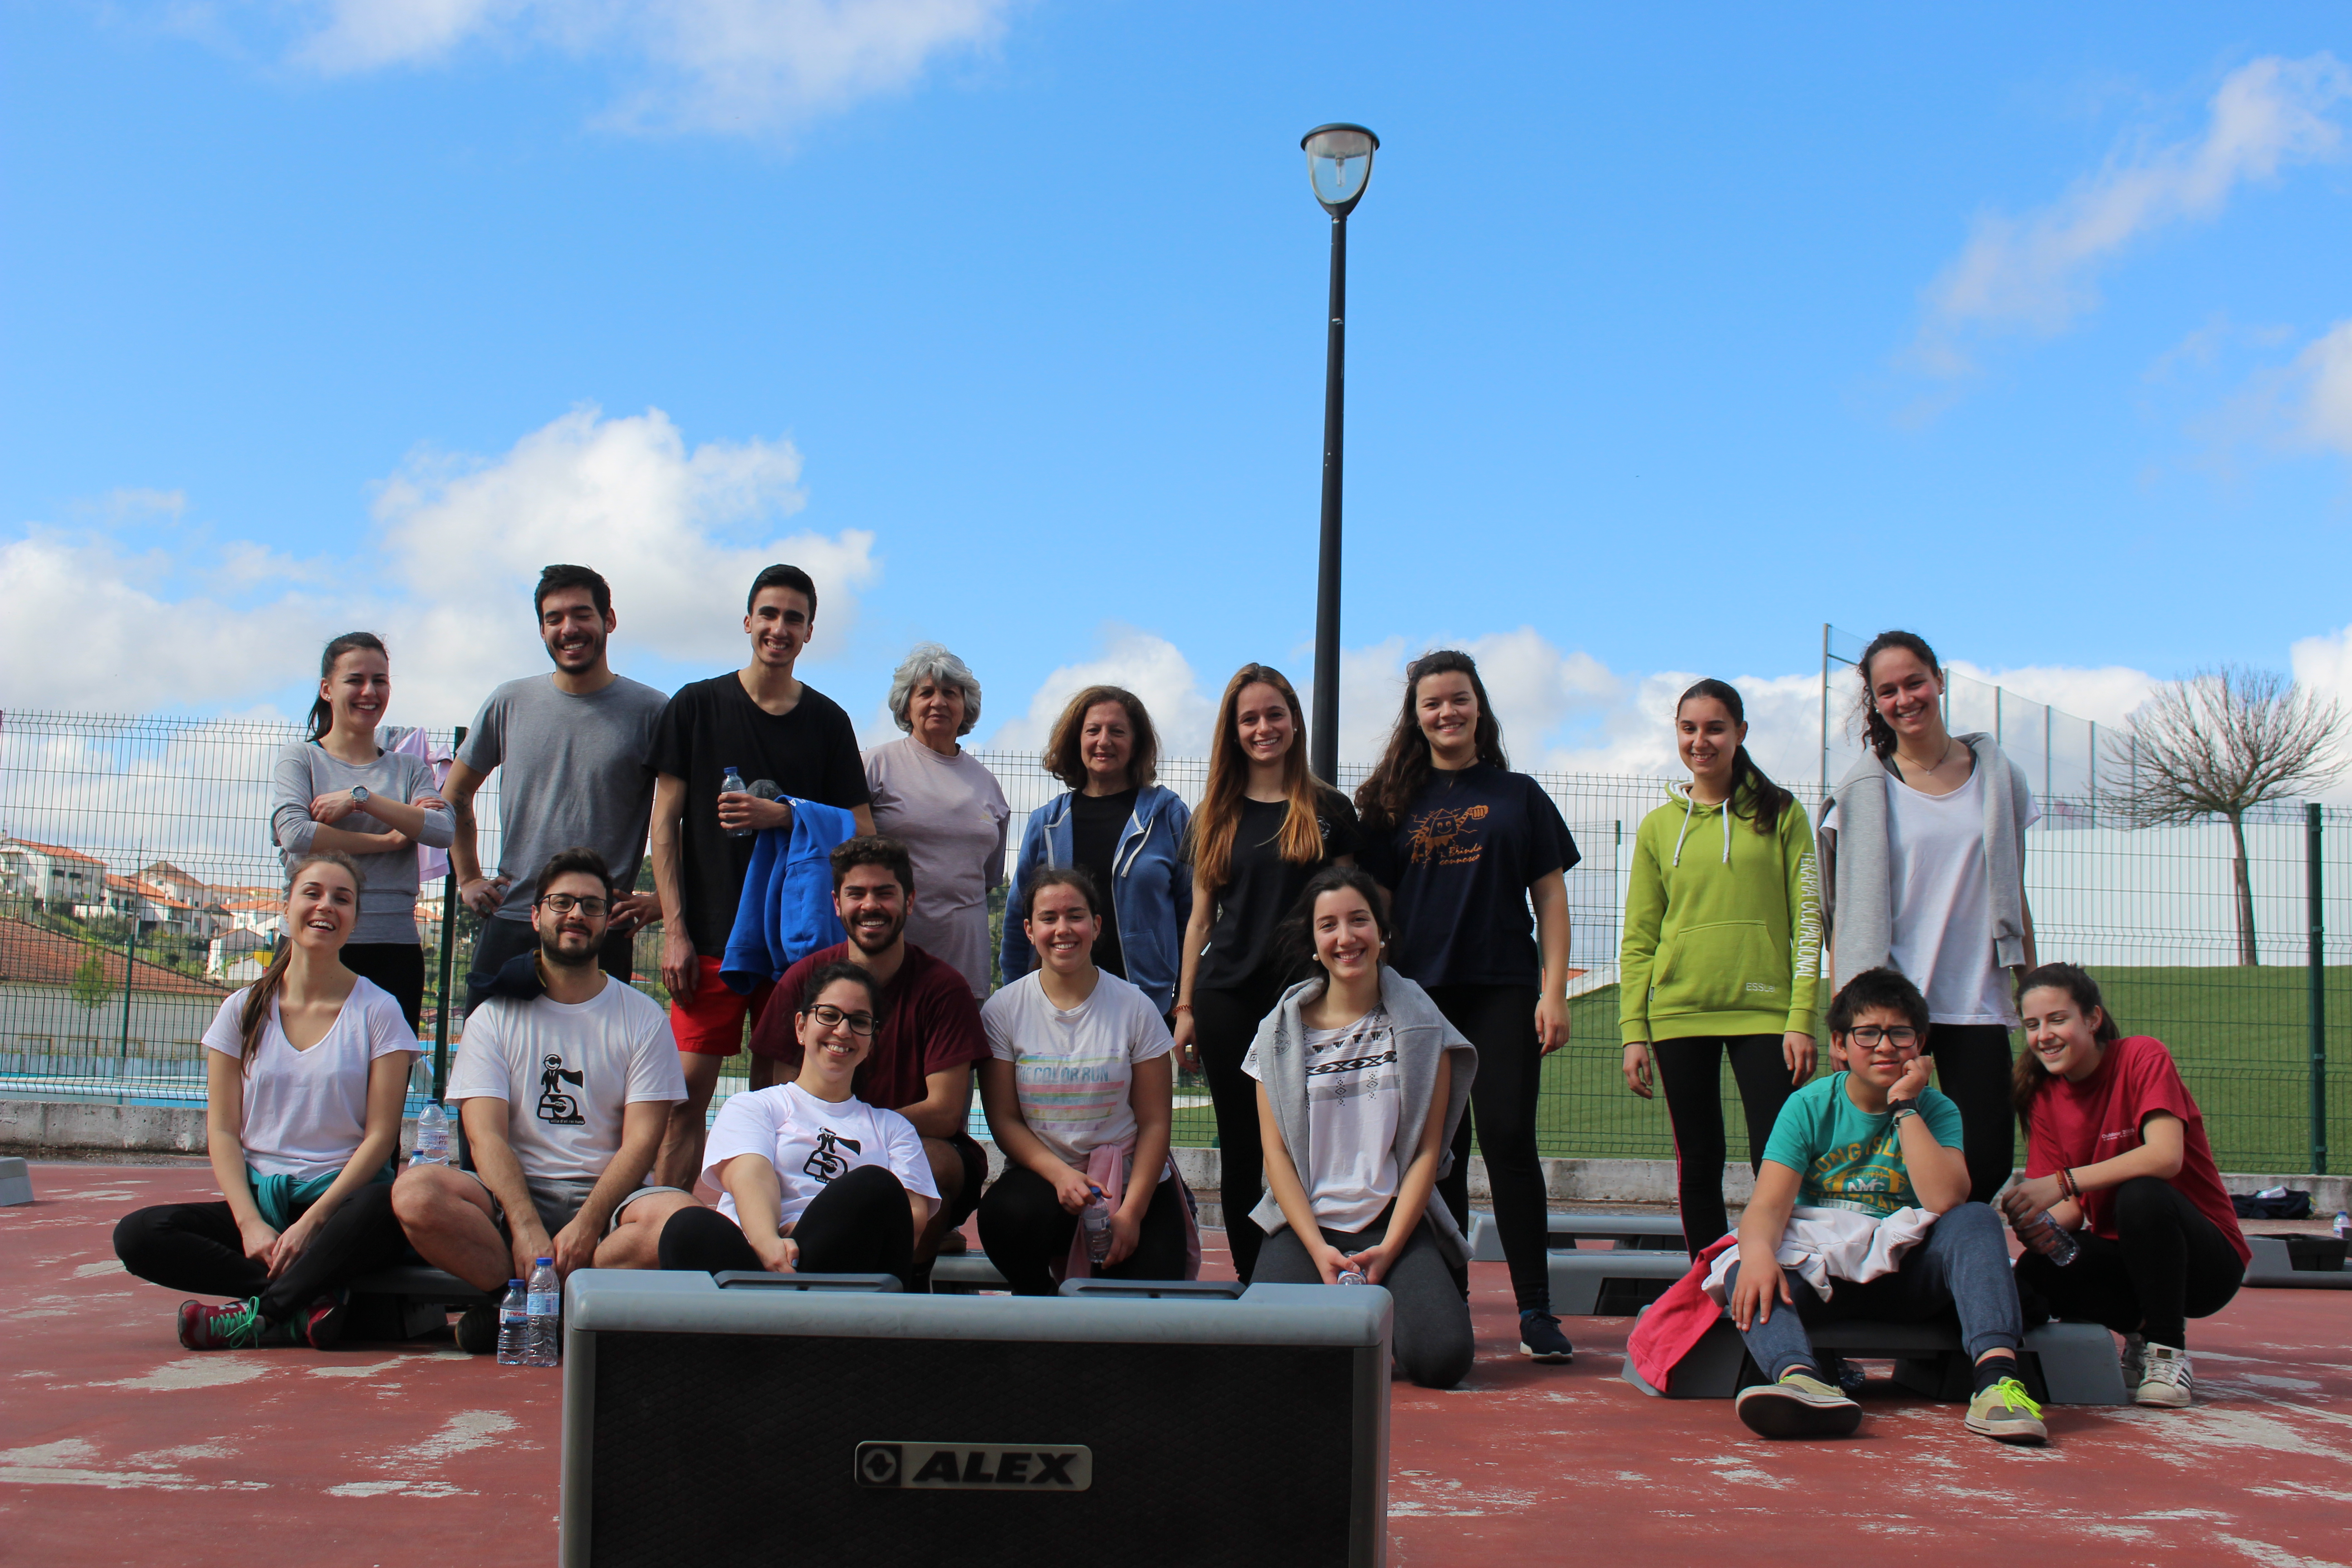 Vila de Rei: Villa d’el Rei Tuna colocou 67 participantes a praticar exercício físico